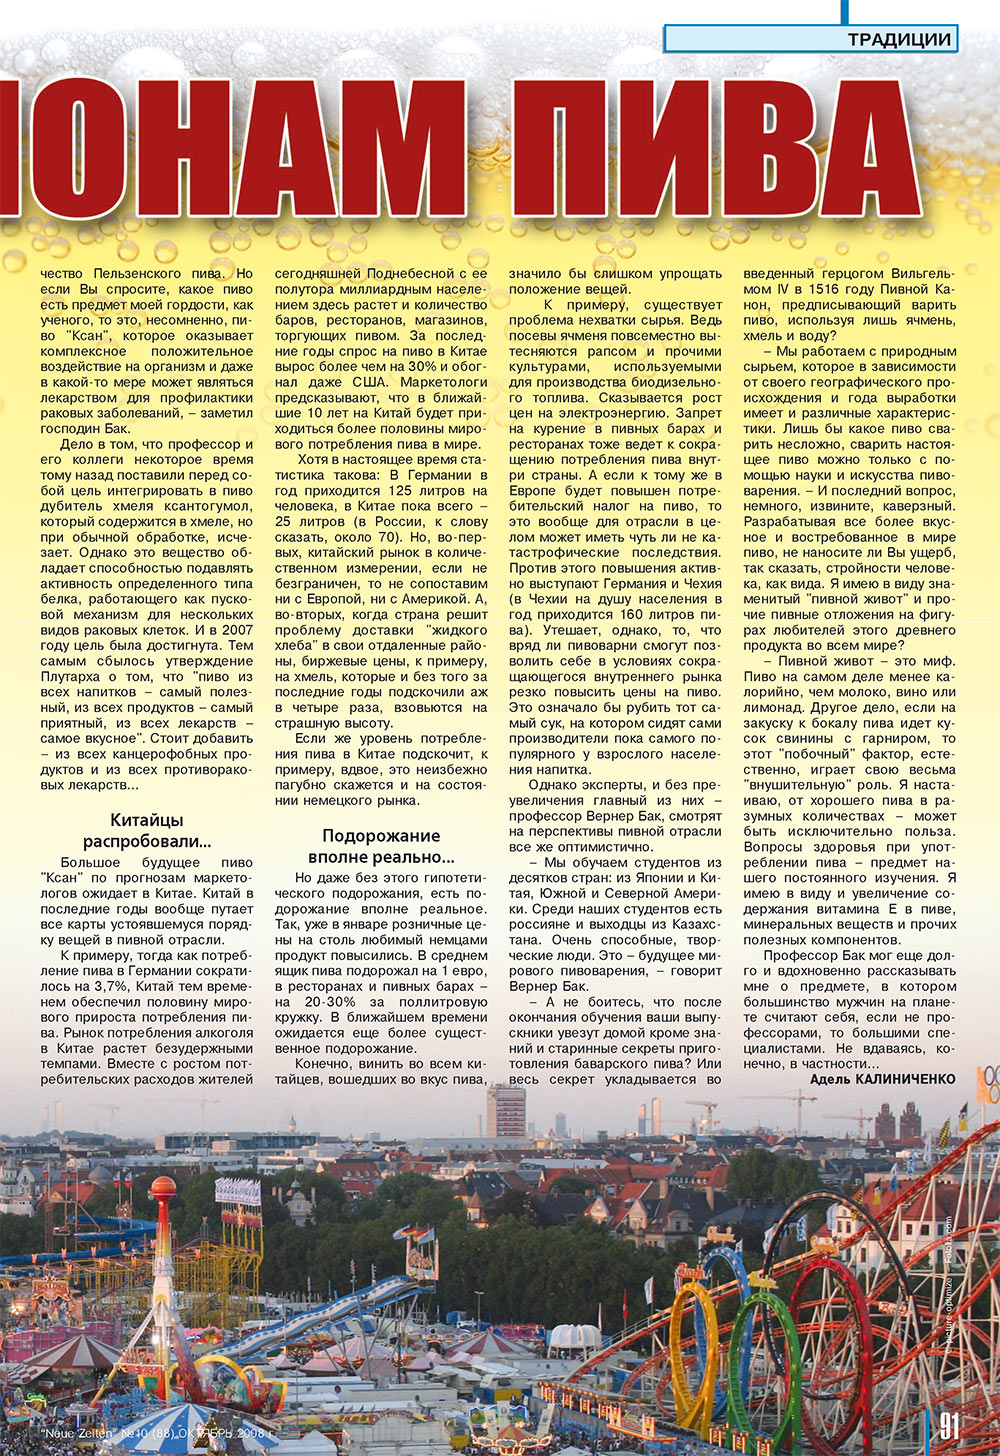 Neue Zeiten, журнал. 2008 №10 стр.91